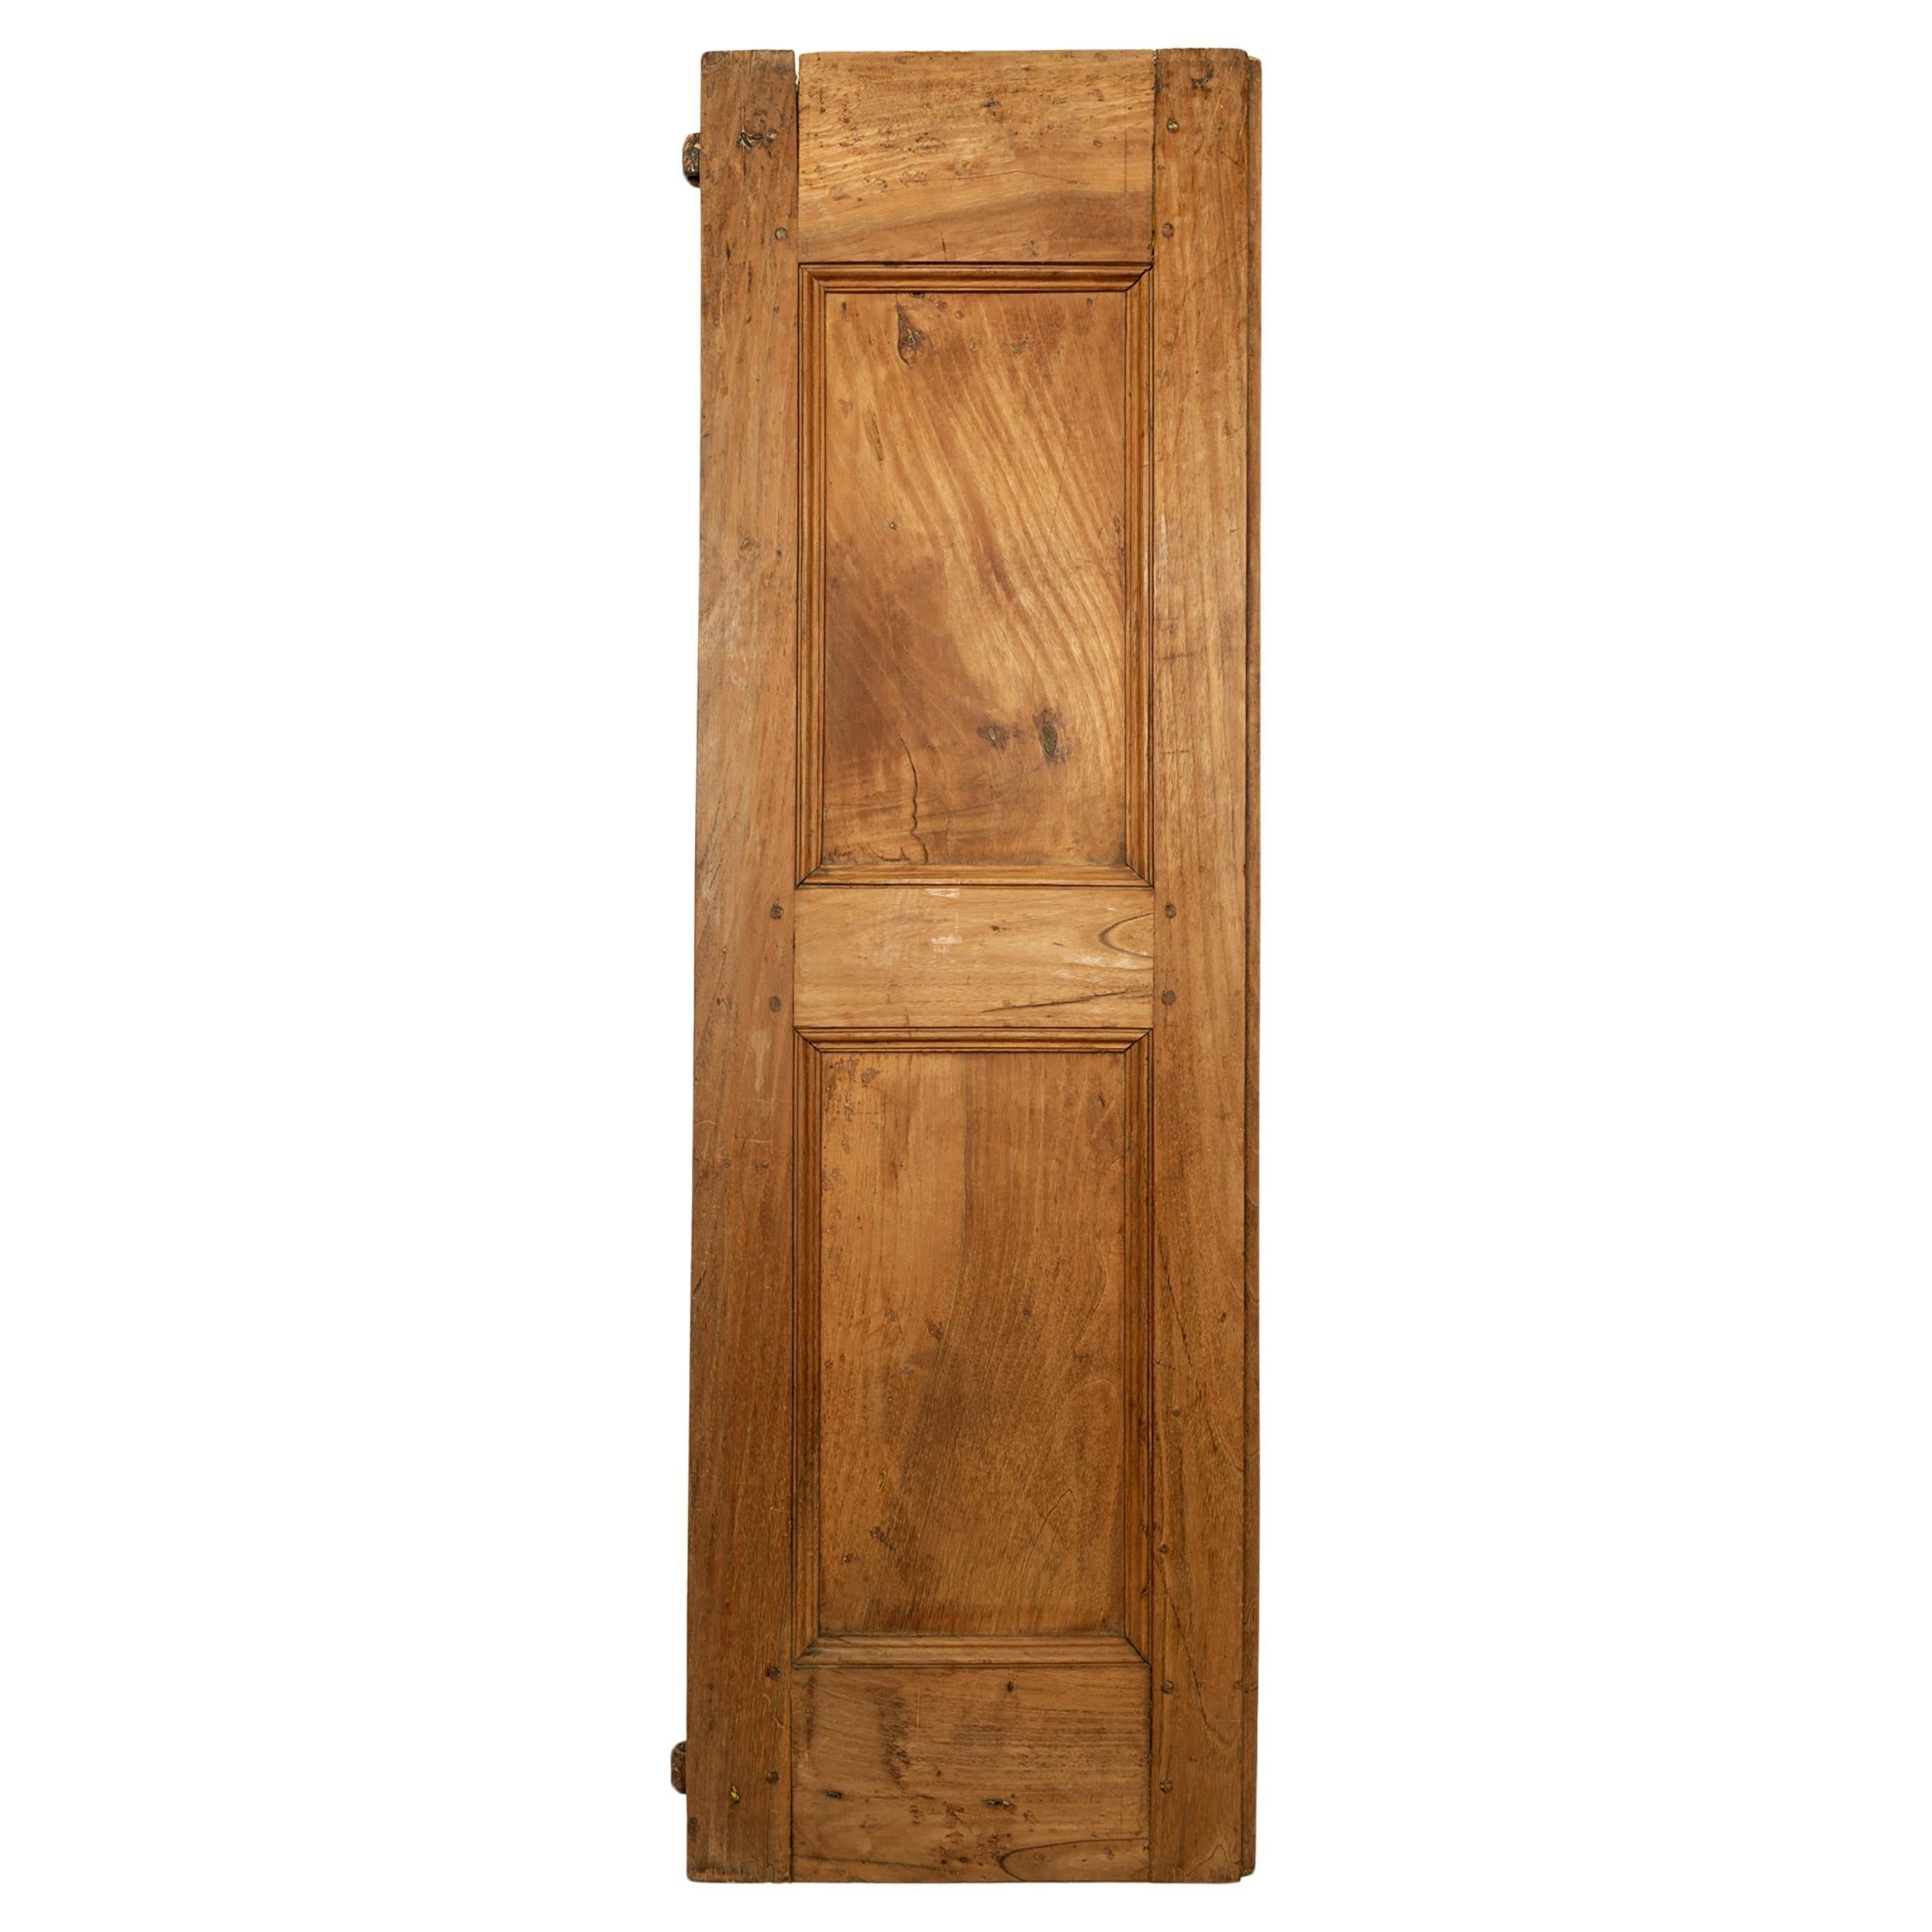 Wooden Panel with Little Ancient Italian Door